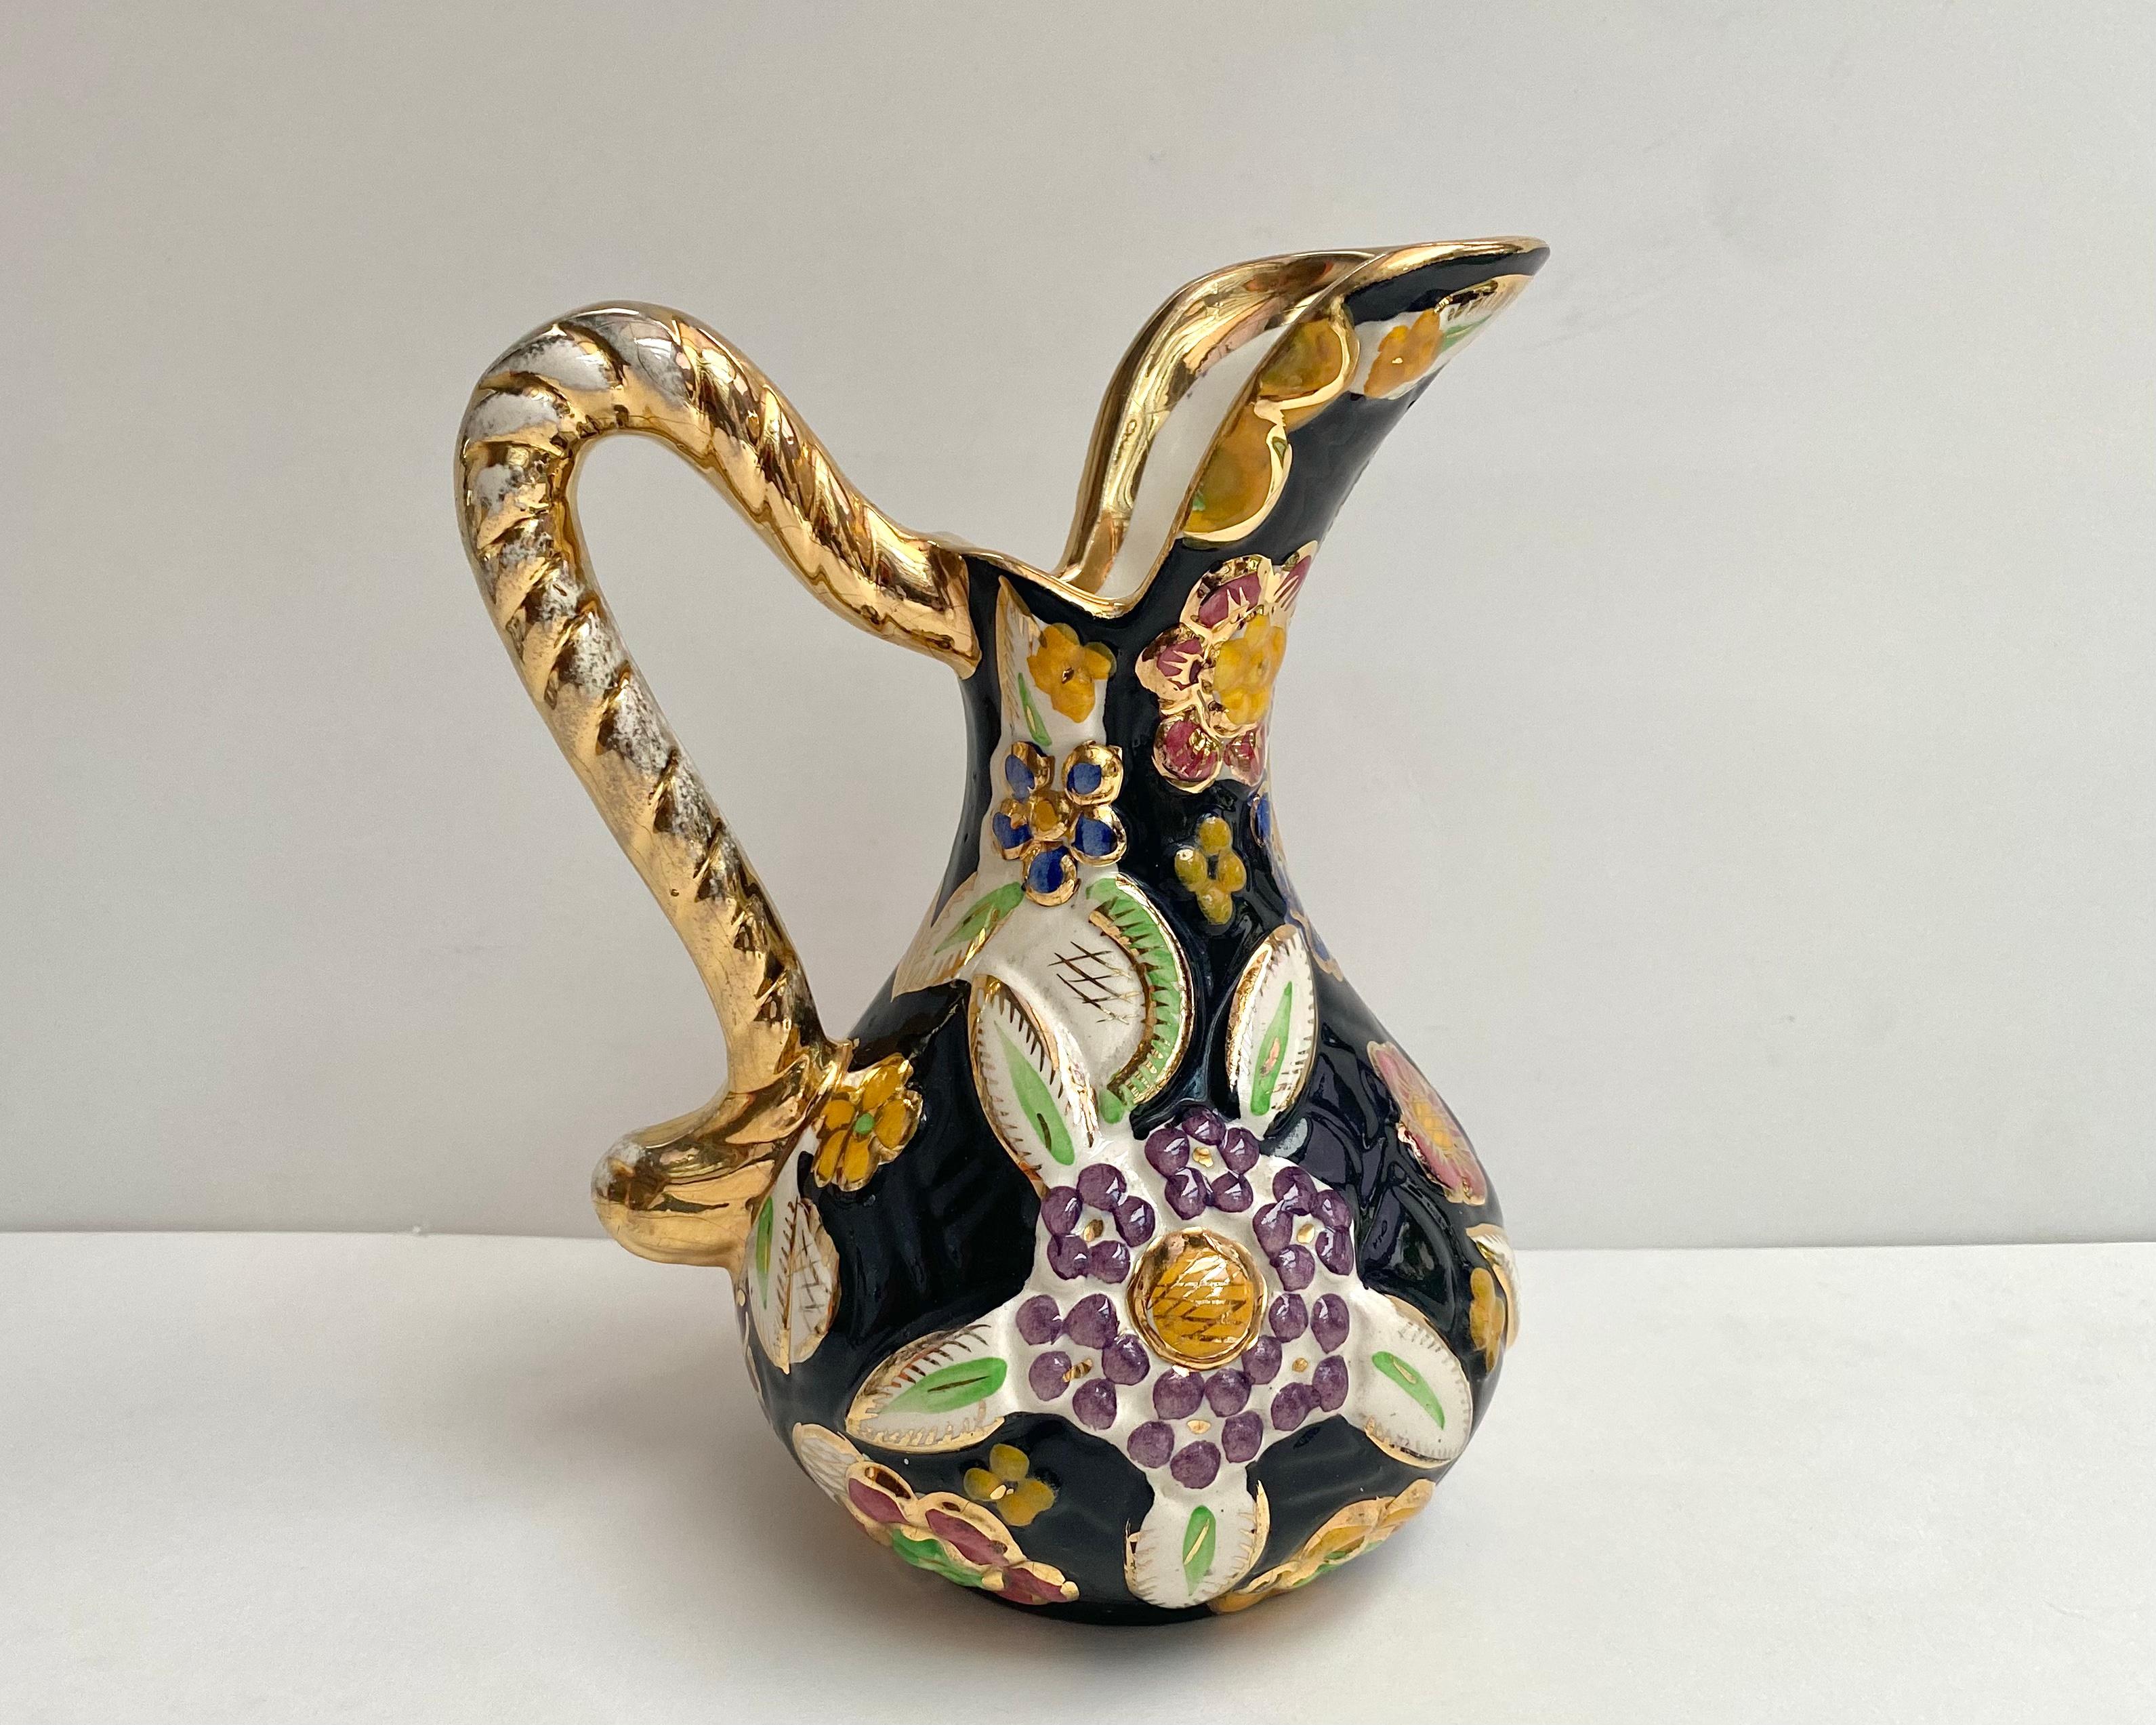 Pichet/vase en céramique des années 1950, attribué à Hubert Bequet Quaregnon, avec un beau fond noir décoré d'un motif émaillé en relief aux couleurs vives représentant des fleurs colorées.

u2028u2028Tous les objets sont fabriqués et peints à la